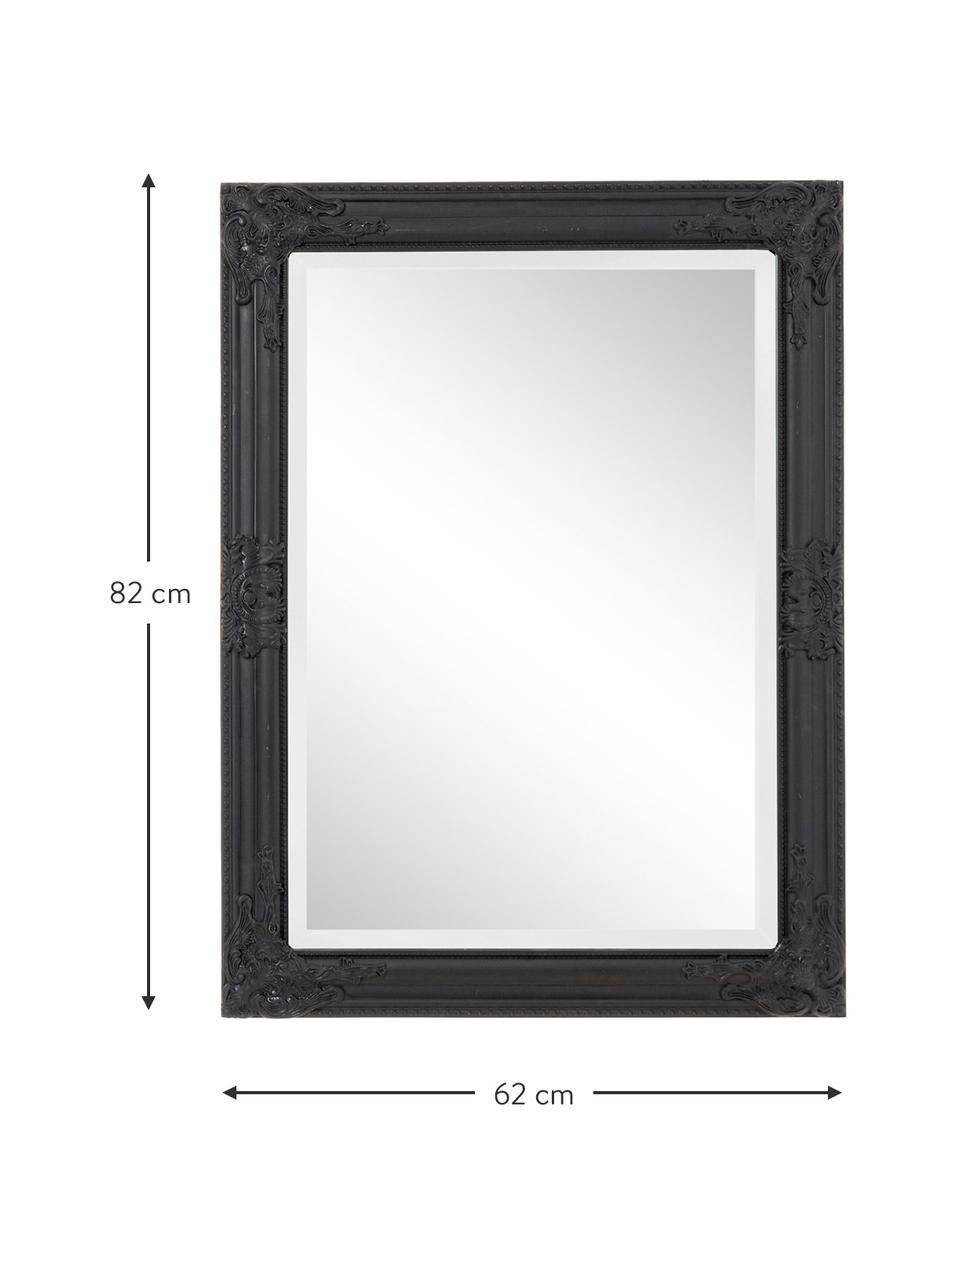 Čtvercové nástěnné zrcadlo s černým dřevěným rámem Miro, Černá, Š 62 cm, V 82 cm